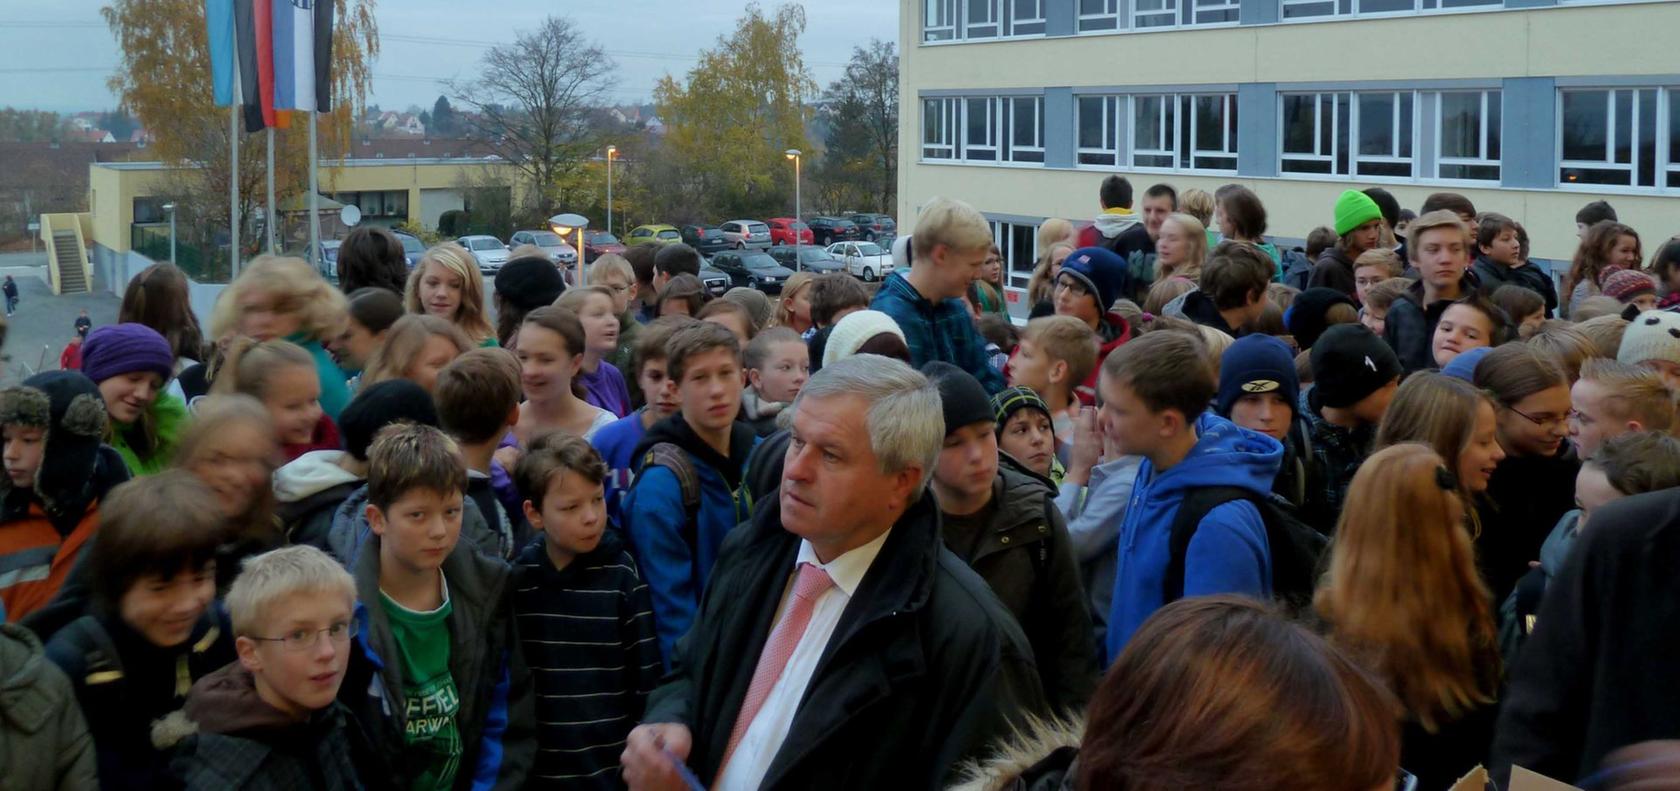 Hochmoderne Schule in Neustadt eingeweiht